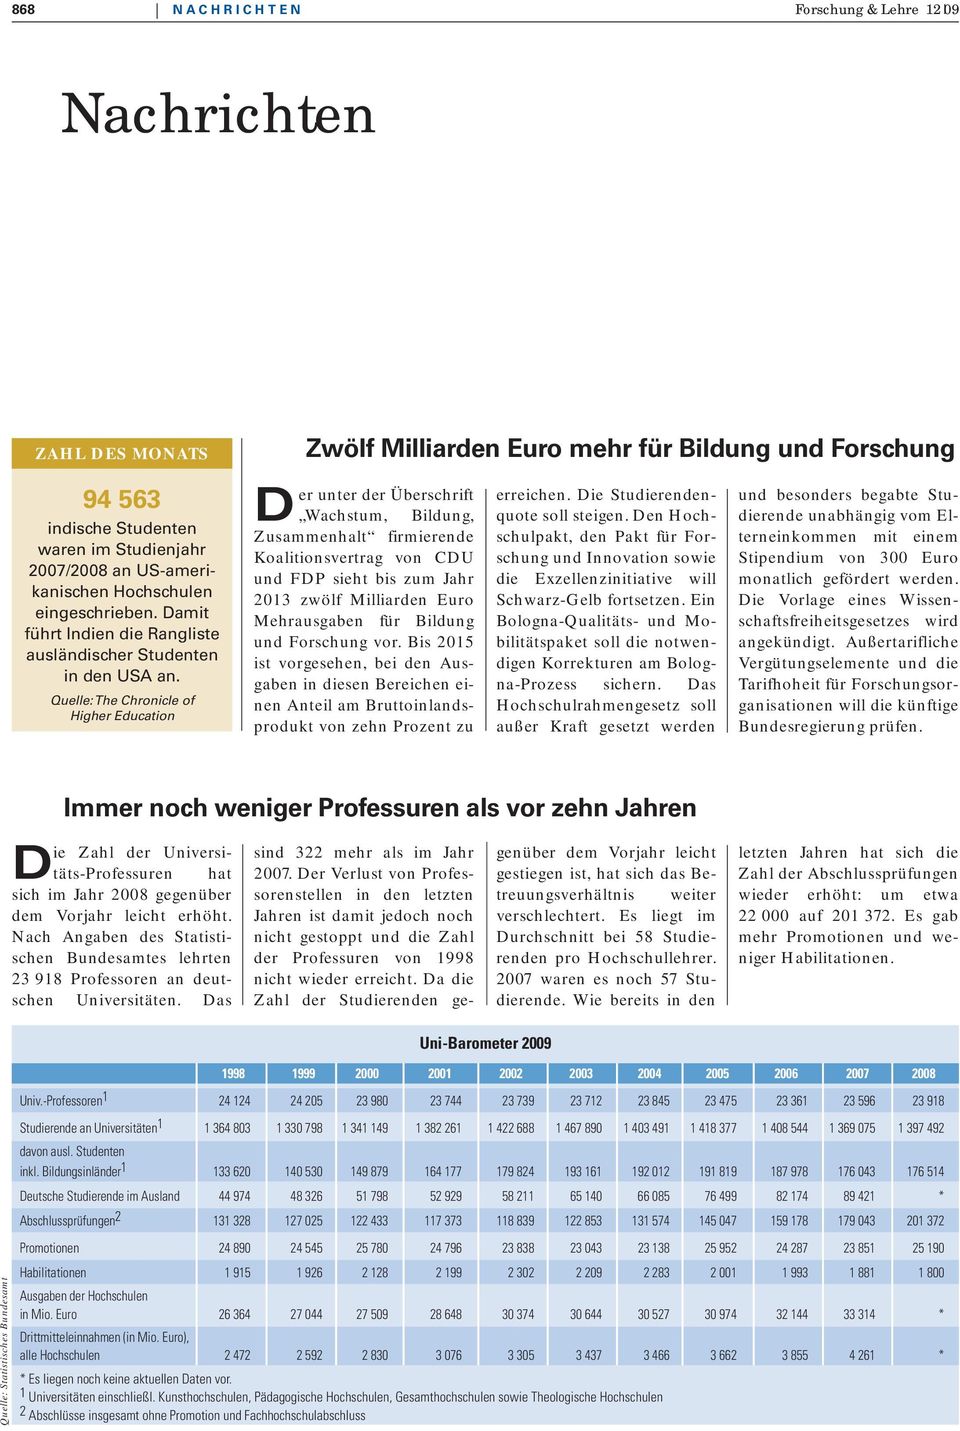 Quelle: The Chronicle of Higher Education Zwölf Milliarden Euro mehr für Bildung und Forschung Der unter der Überschrift Wachstum, Bildung, Zusammenhalt firmierende Koalitionsvertrag von CDU und FDP